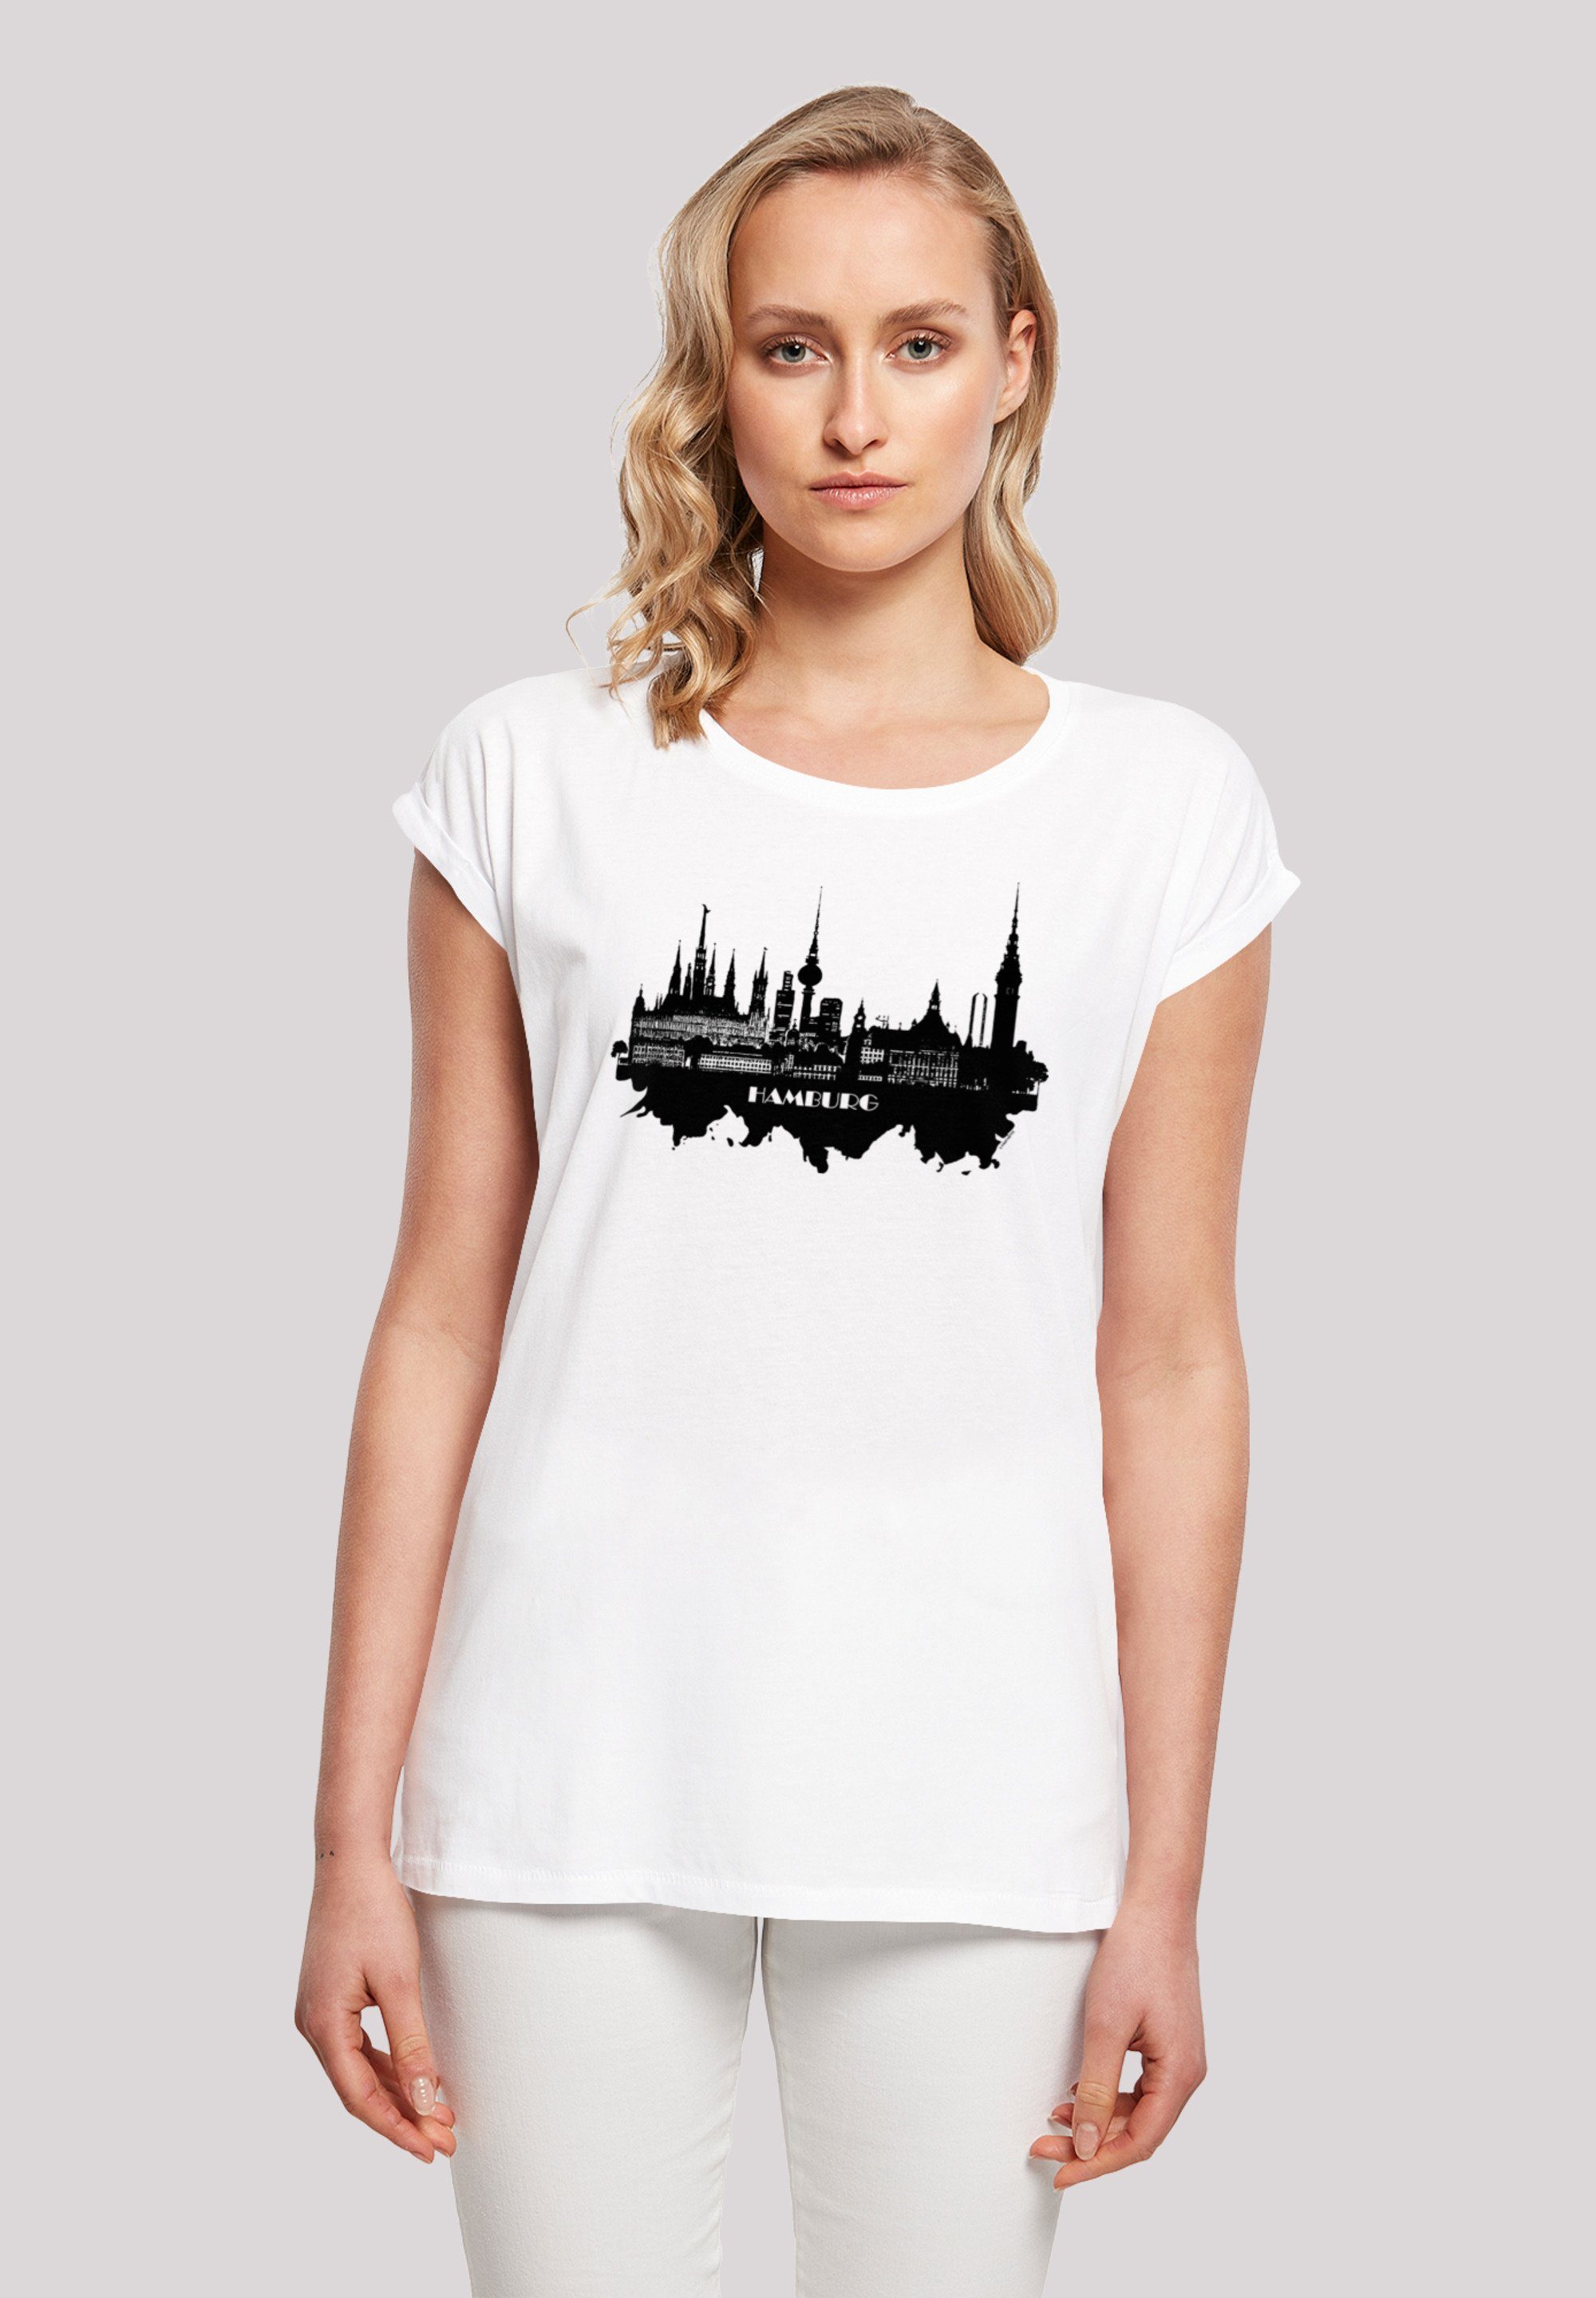 Cities - Größe Collection groß ist T-Shirt Model M F4NT4STIC trägt Hamburg und Das 170 Print, cm skyline